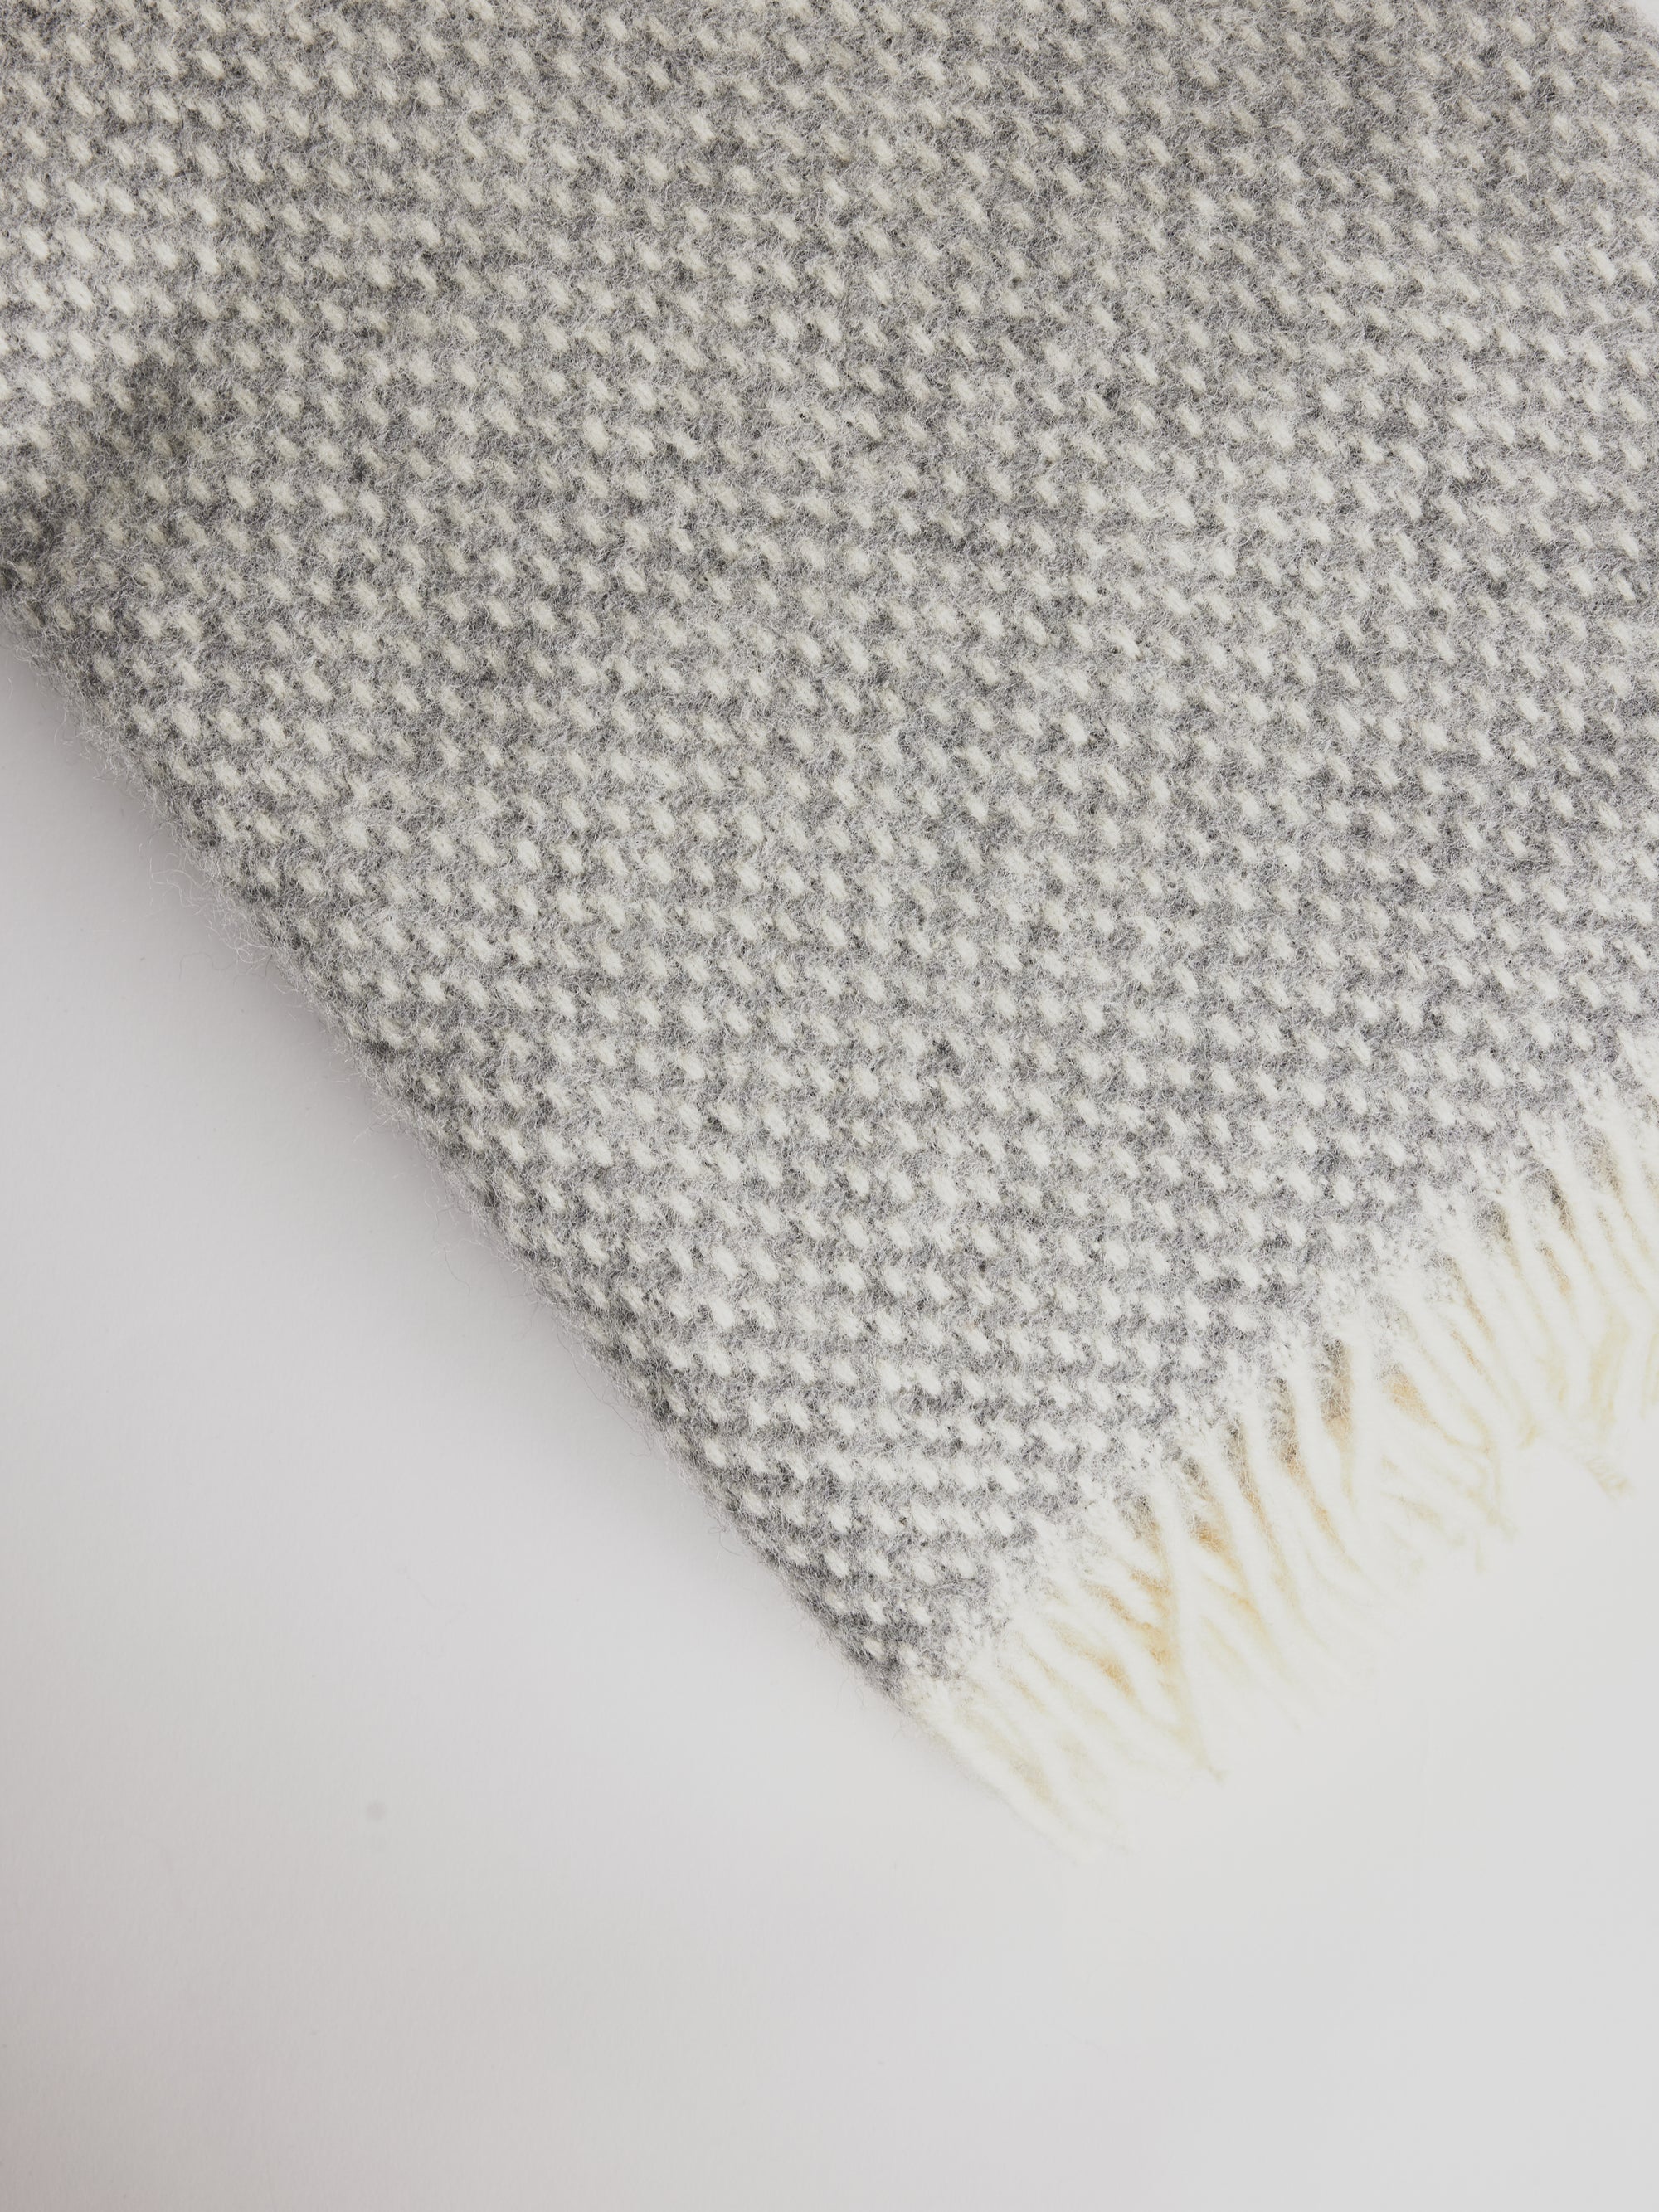 Woolen Blanket - Preppy Grey - Cigale &  Fourmi